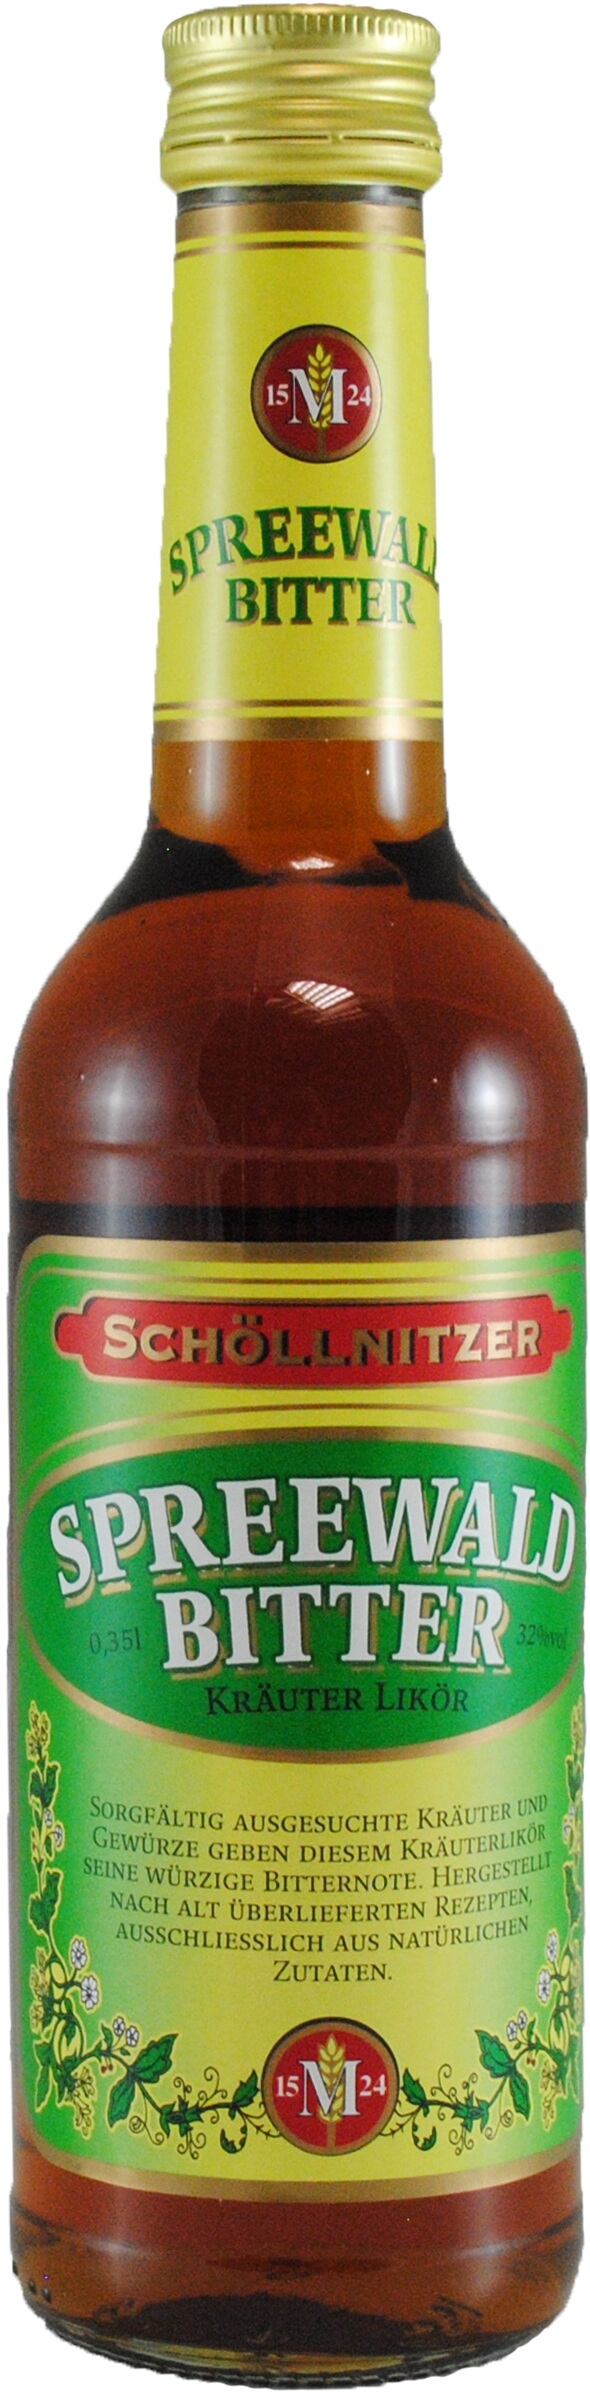 Schöllnitzer Spreewald Bitter 32% vol. 0,35L